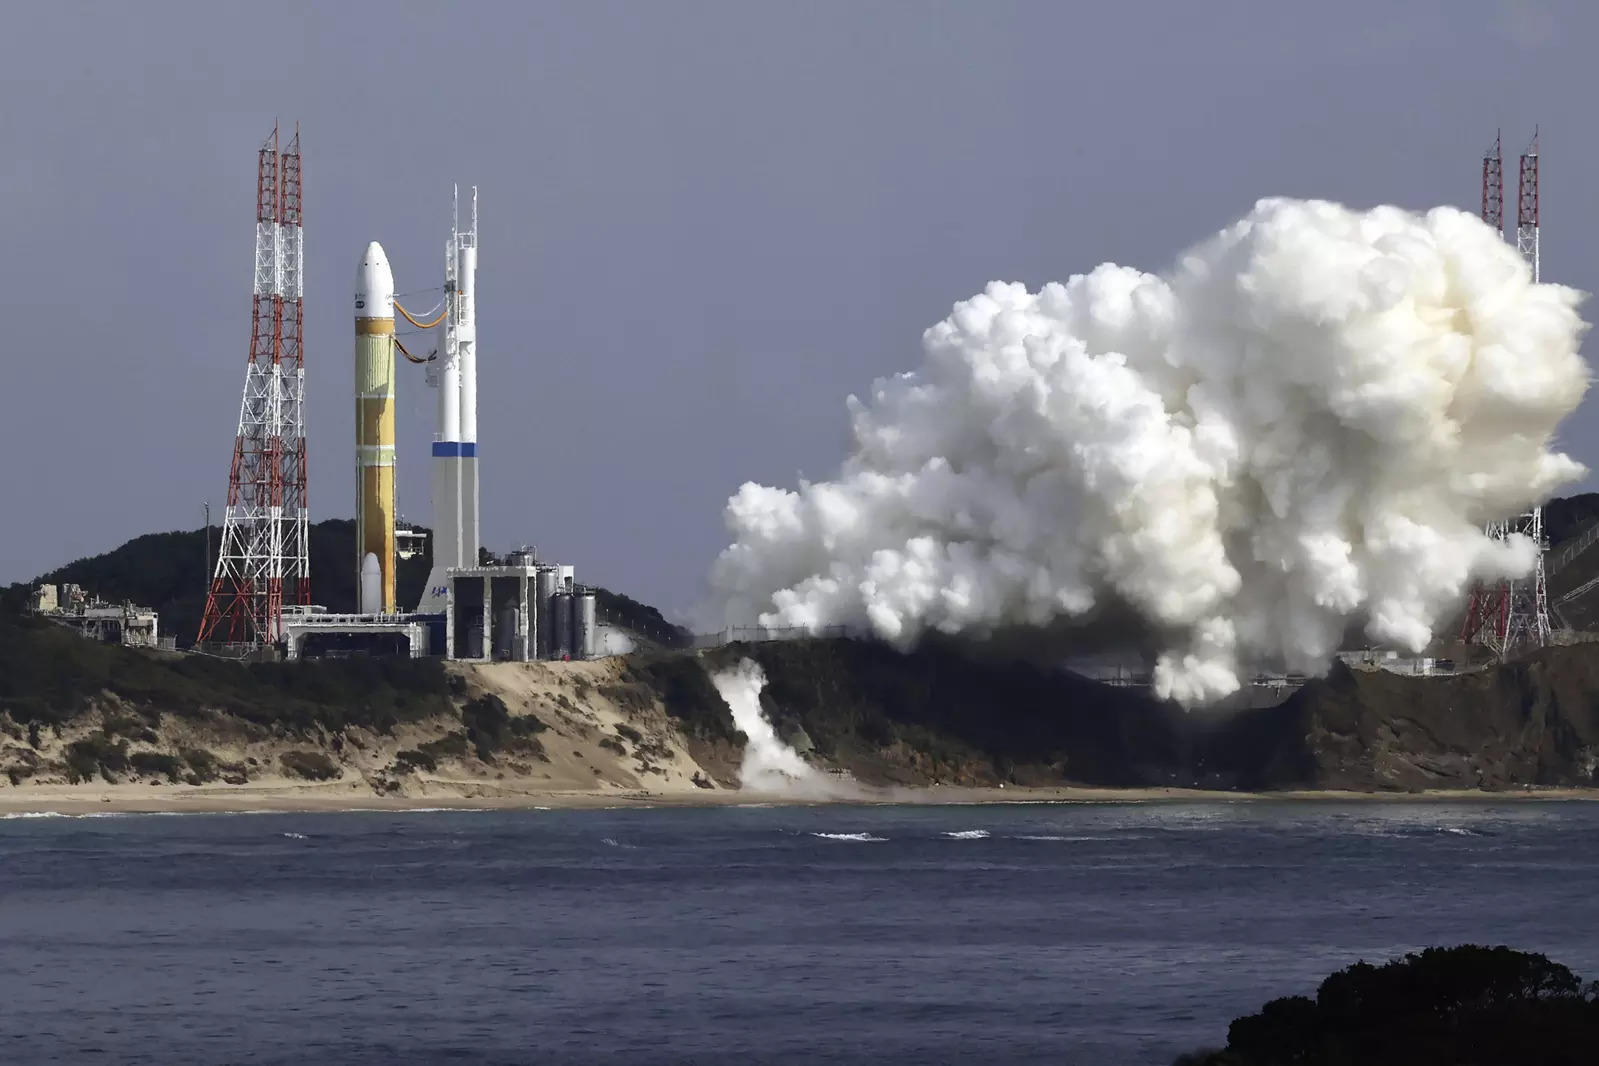 Japan rocket engine explodes during test: Official